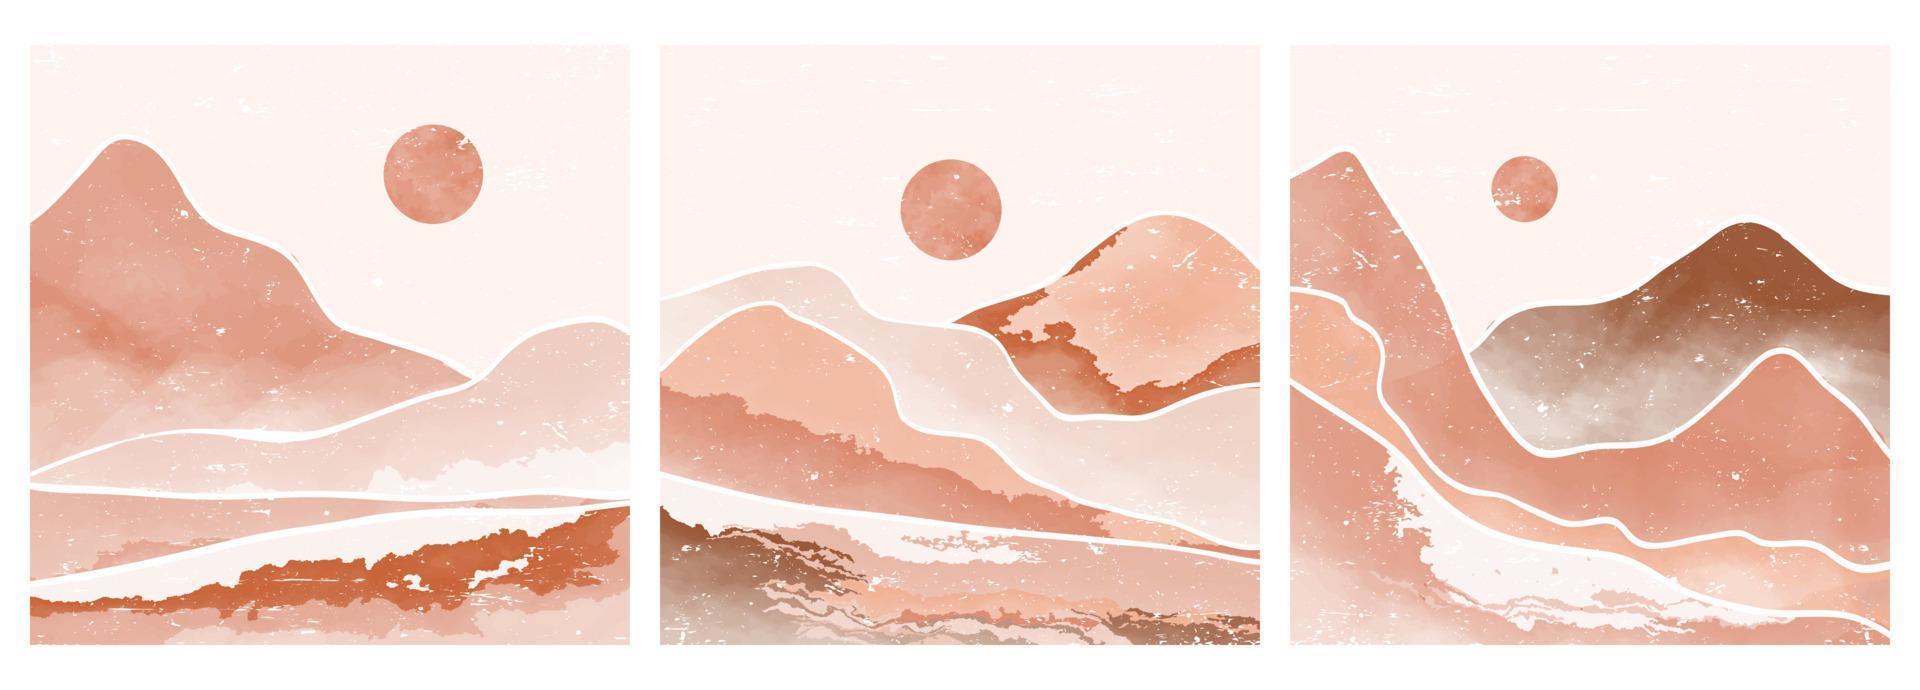 mitten av århundradet modernt minimalistisk konsttryck. abstrakta samtida estetiska bakgrunder landskap med sol, måne, hav, berg. vektor illustrationer